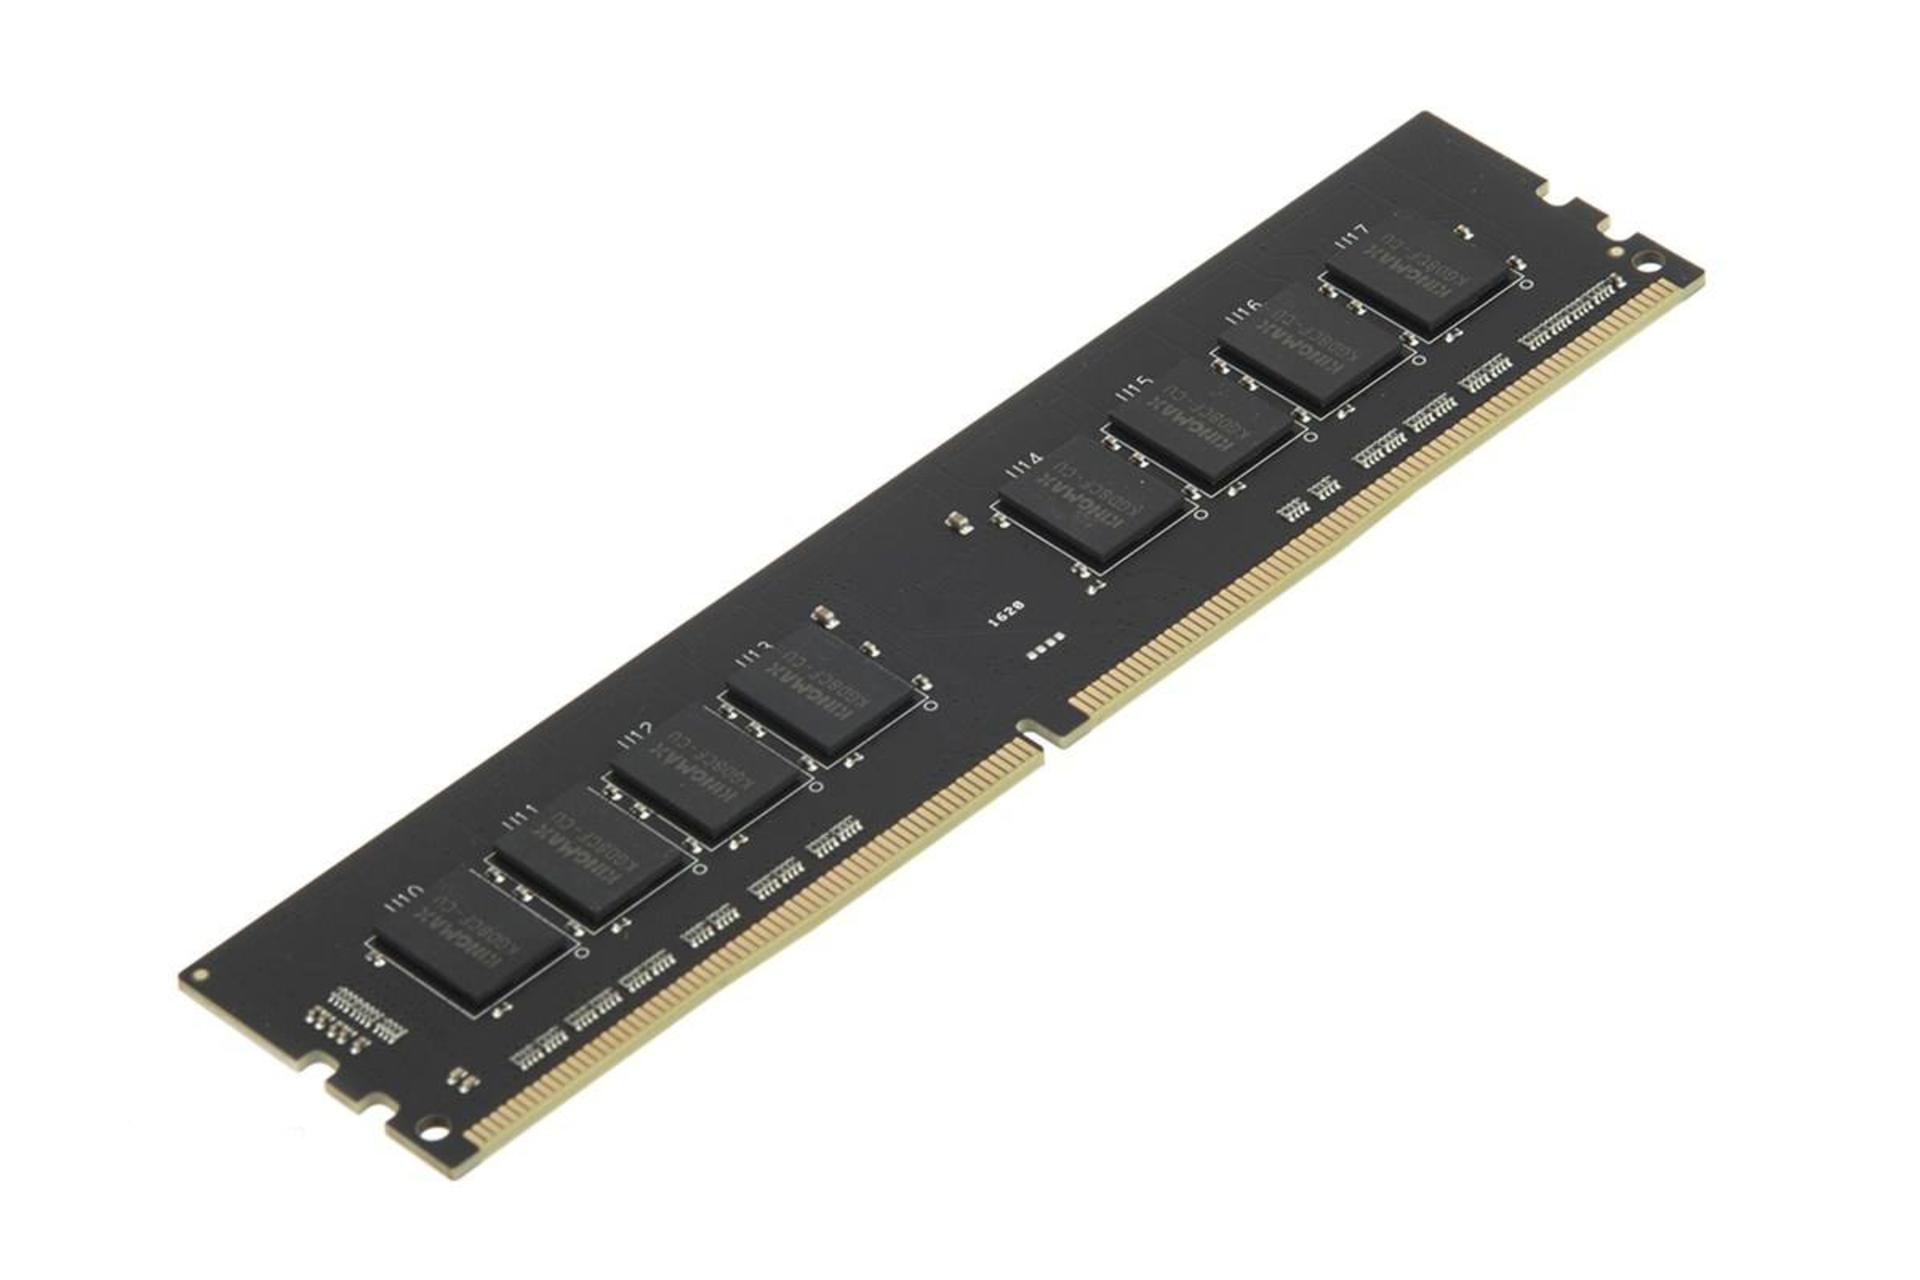 نمای کنار رم کینگ مکس دسکتاپ ظرفیت 8 گیگابایت از نوع DDR4-2400